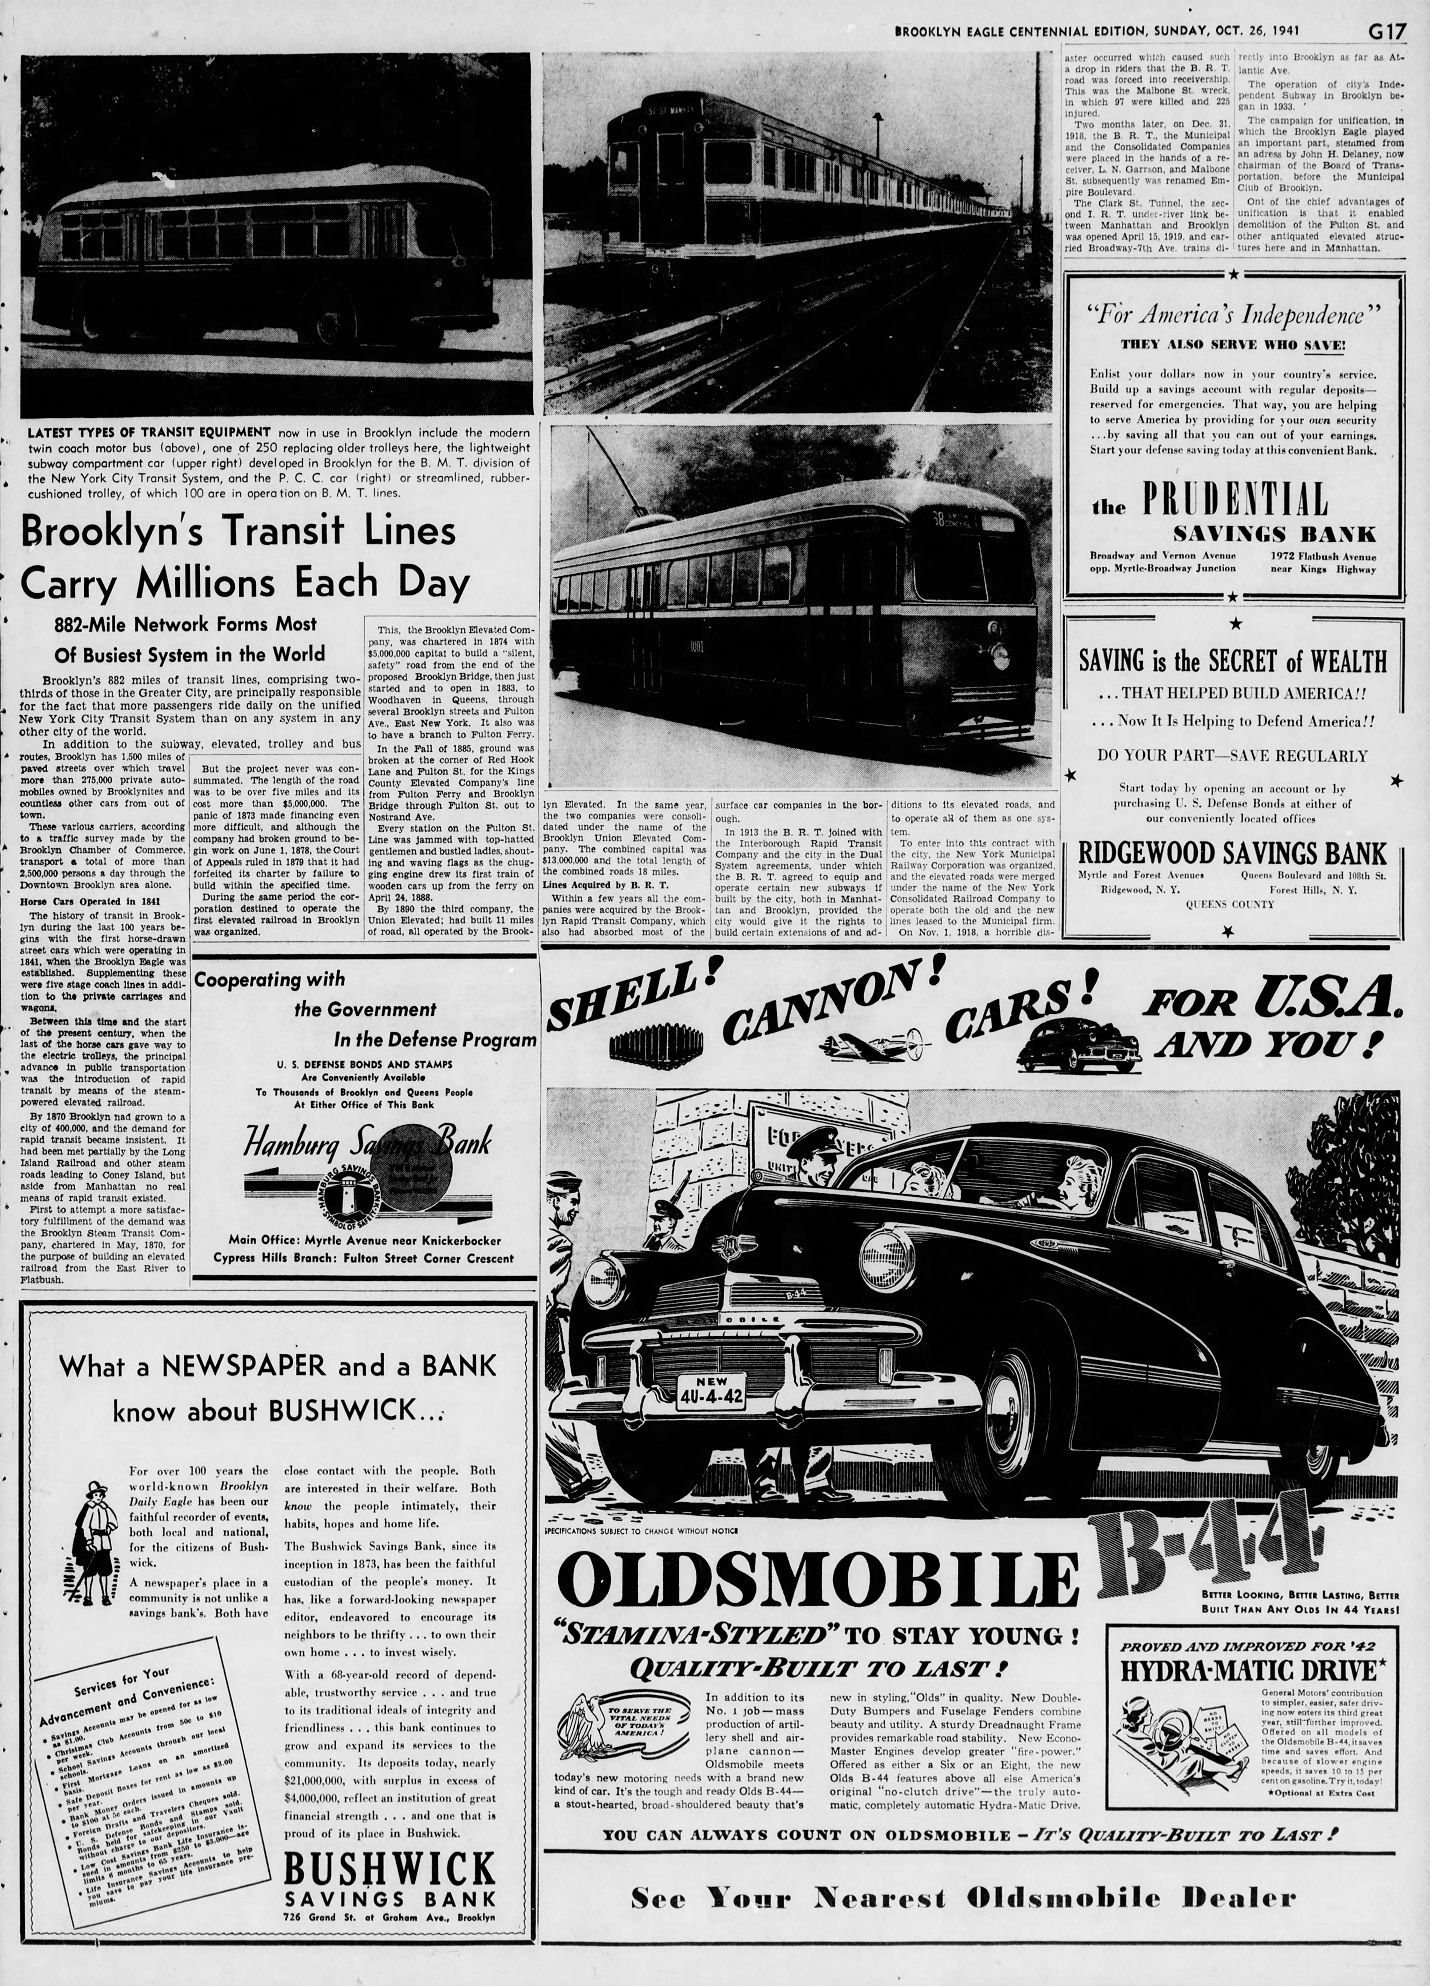 The_Brooklyn_Daily_Eagle_Sun__Oct_26__1941_(17).jpg